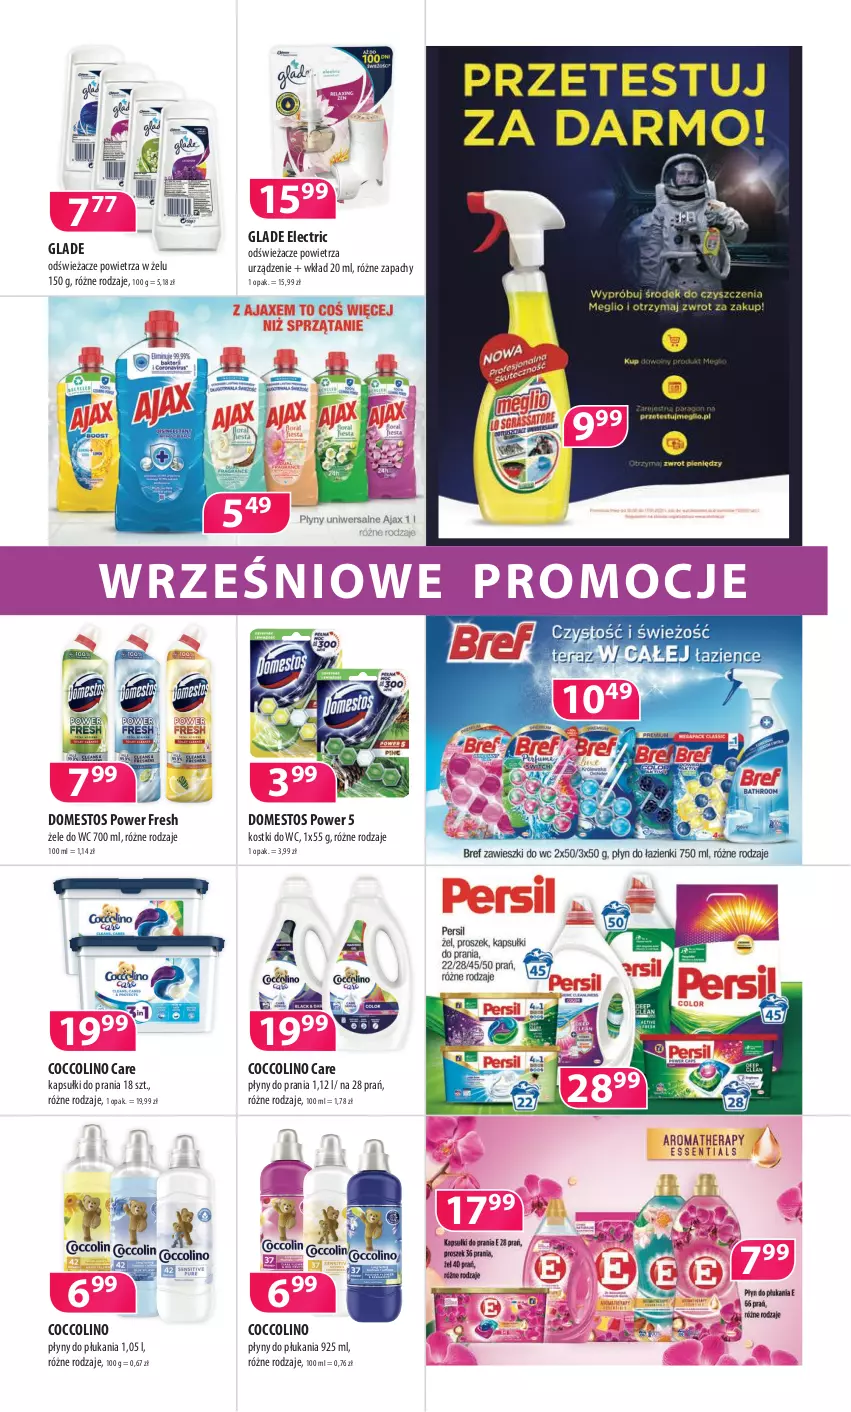 Gazetka promocyjna Drogerie Polskie - Gazetka - ważna 10.09 do 30.09.2021 - strona 8 - produkty: Coccolino, Domestos, Kapsułki do prania